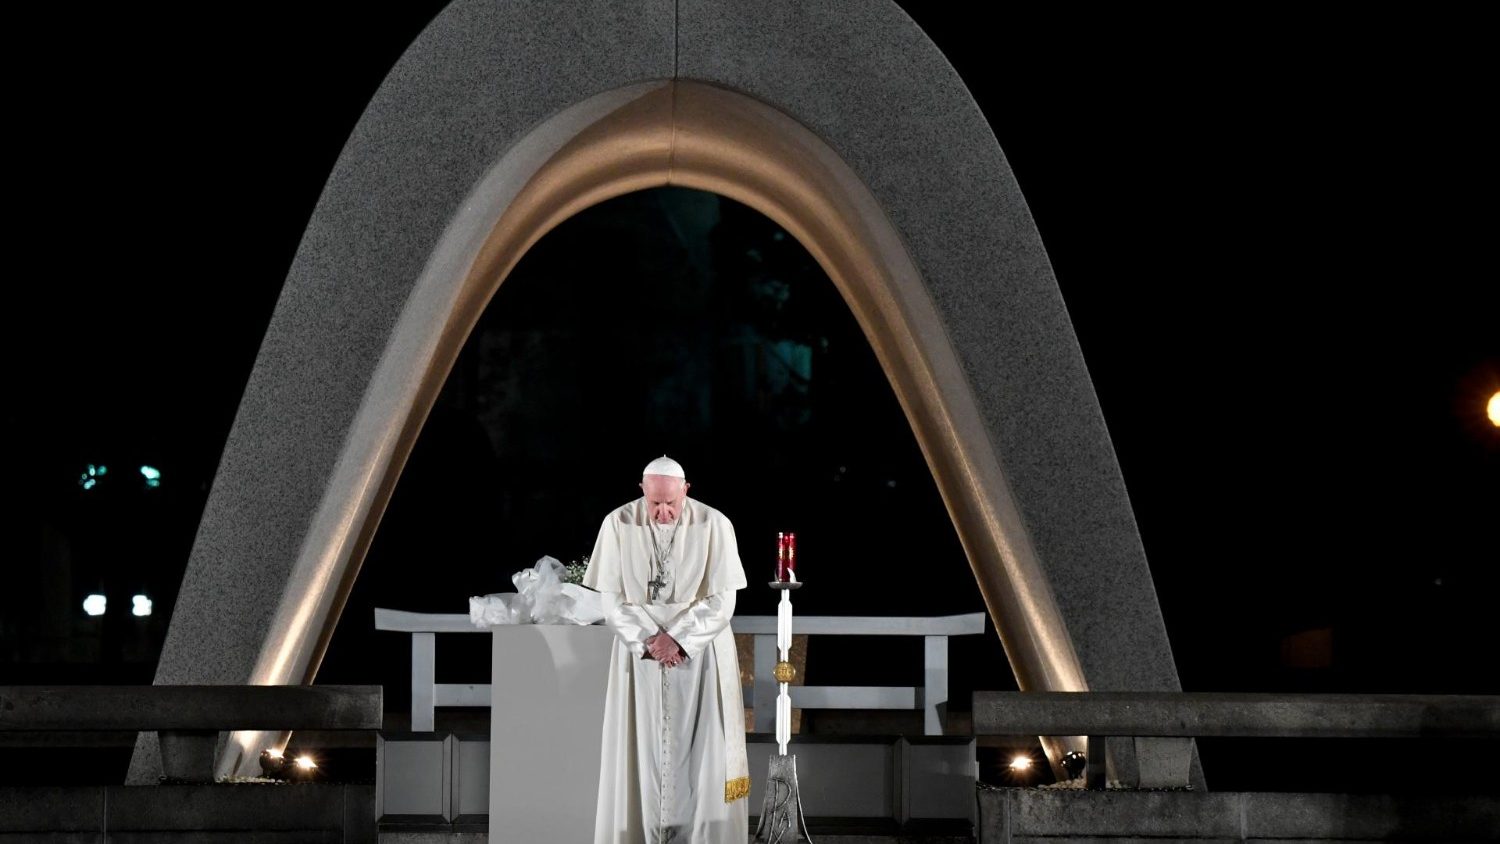 Nucléaire: le Pape estime que le désarmement n'est pas une faiblesse Cq5dam.thumbnail.cropped.1500.844